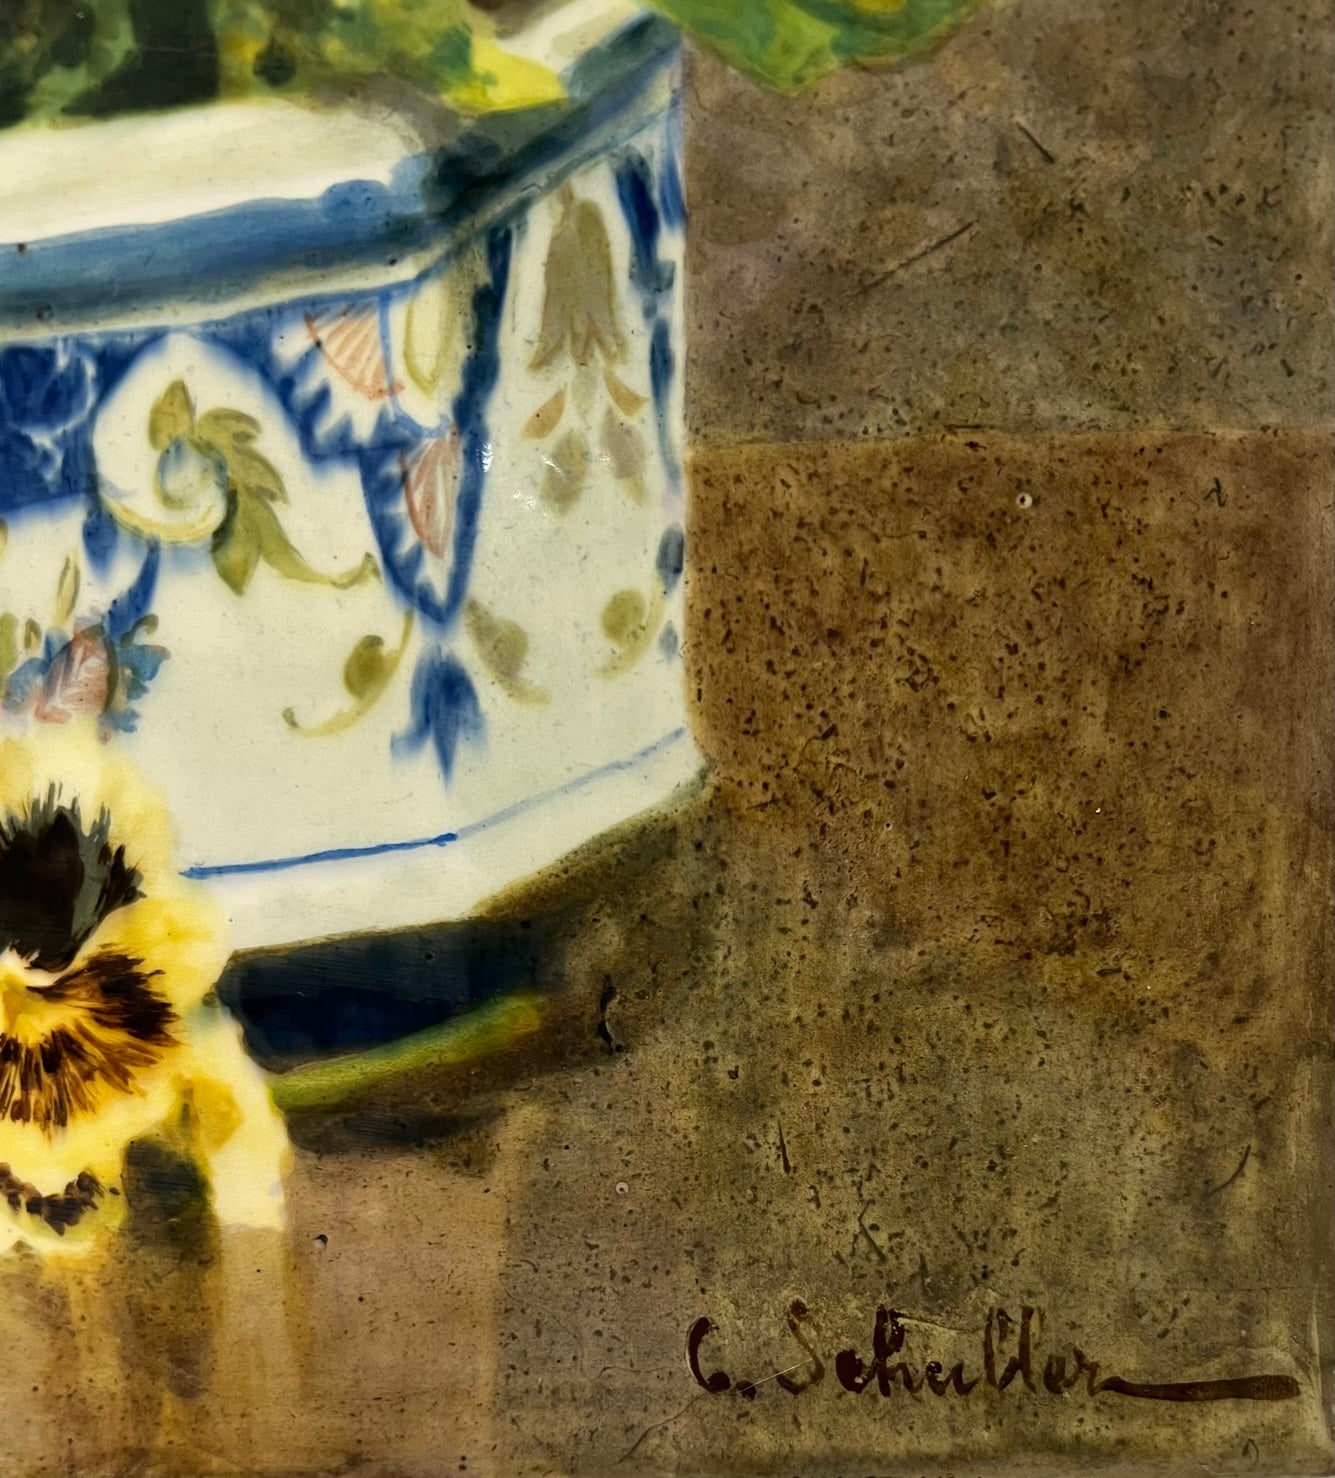 Still life Oil on ceramic panel by Gottlieb Schuller 1879 - 1959